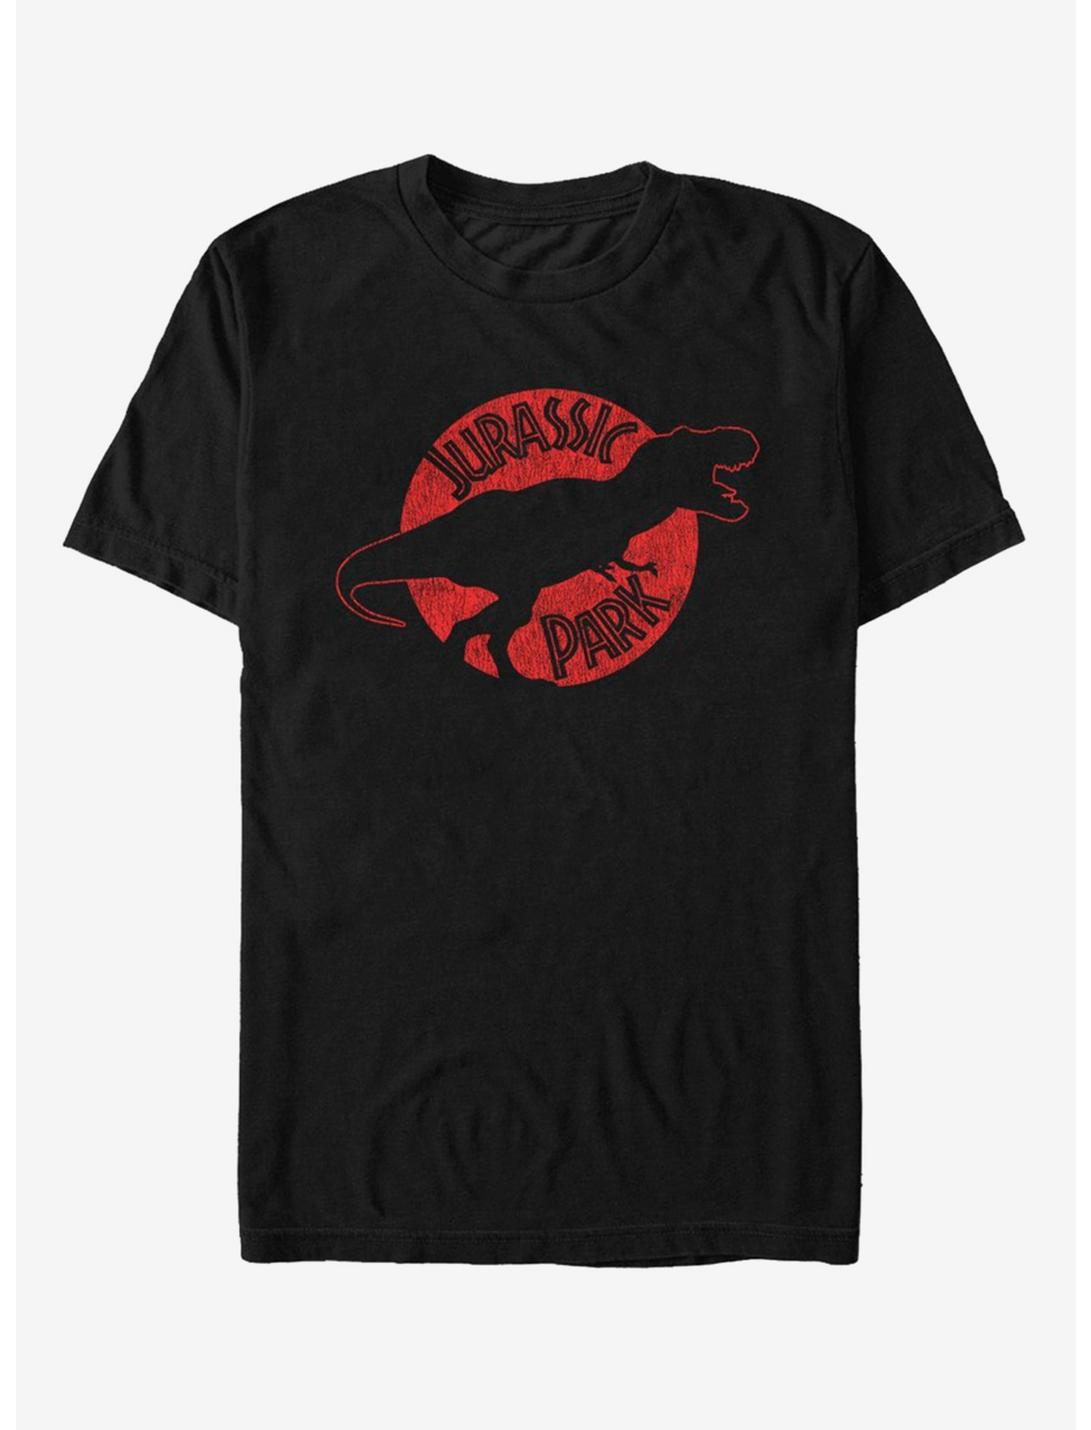 Jurassic Park Epoch T-Shirt, BLACK, hi-res